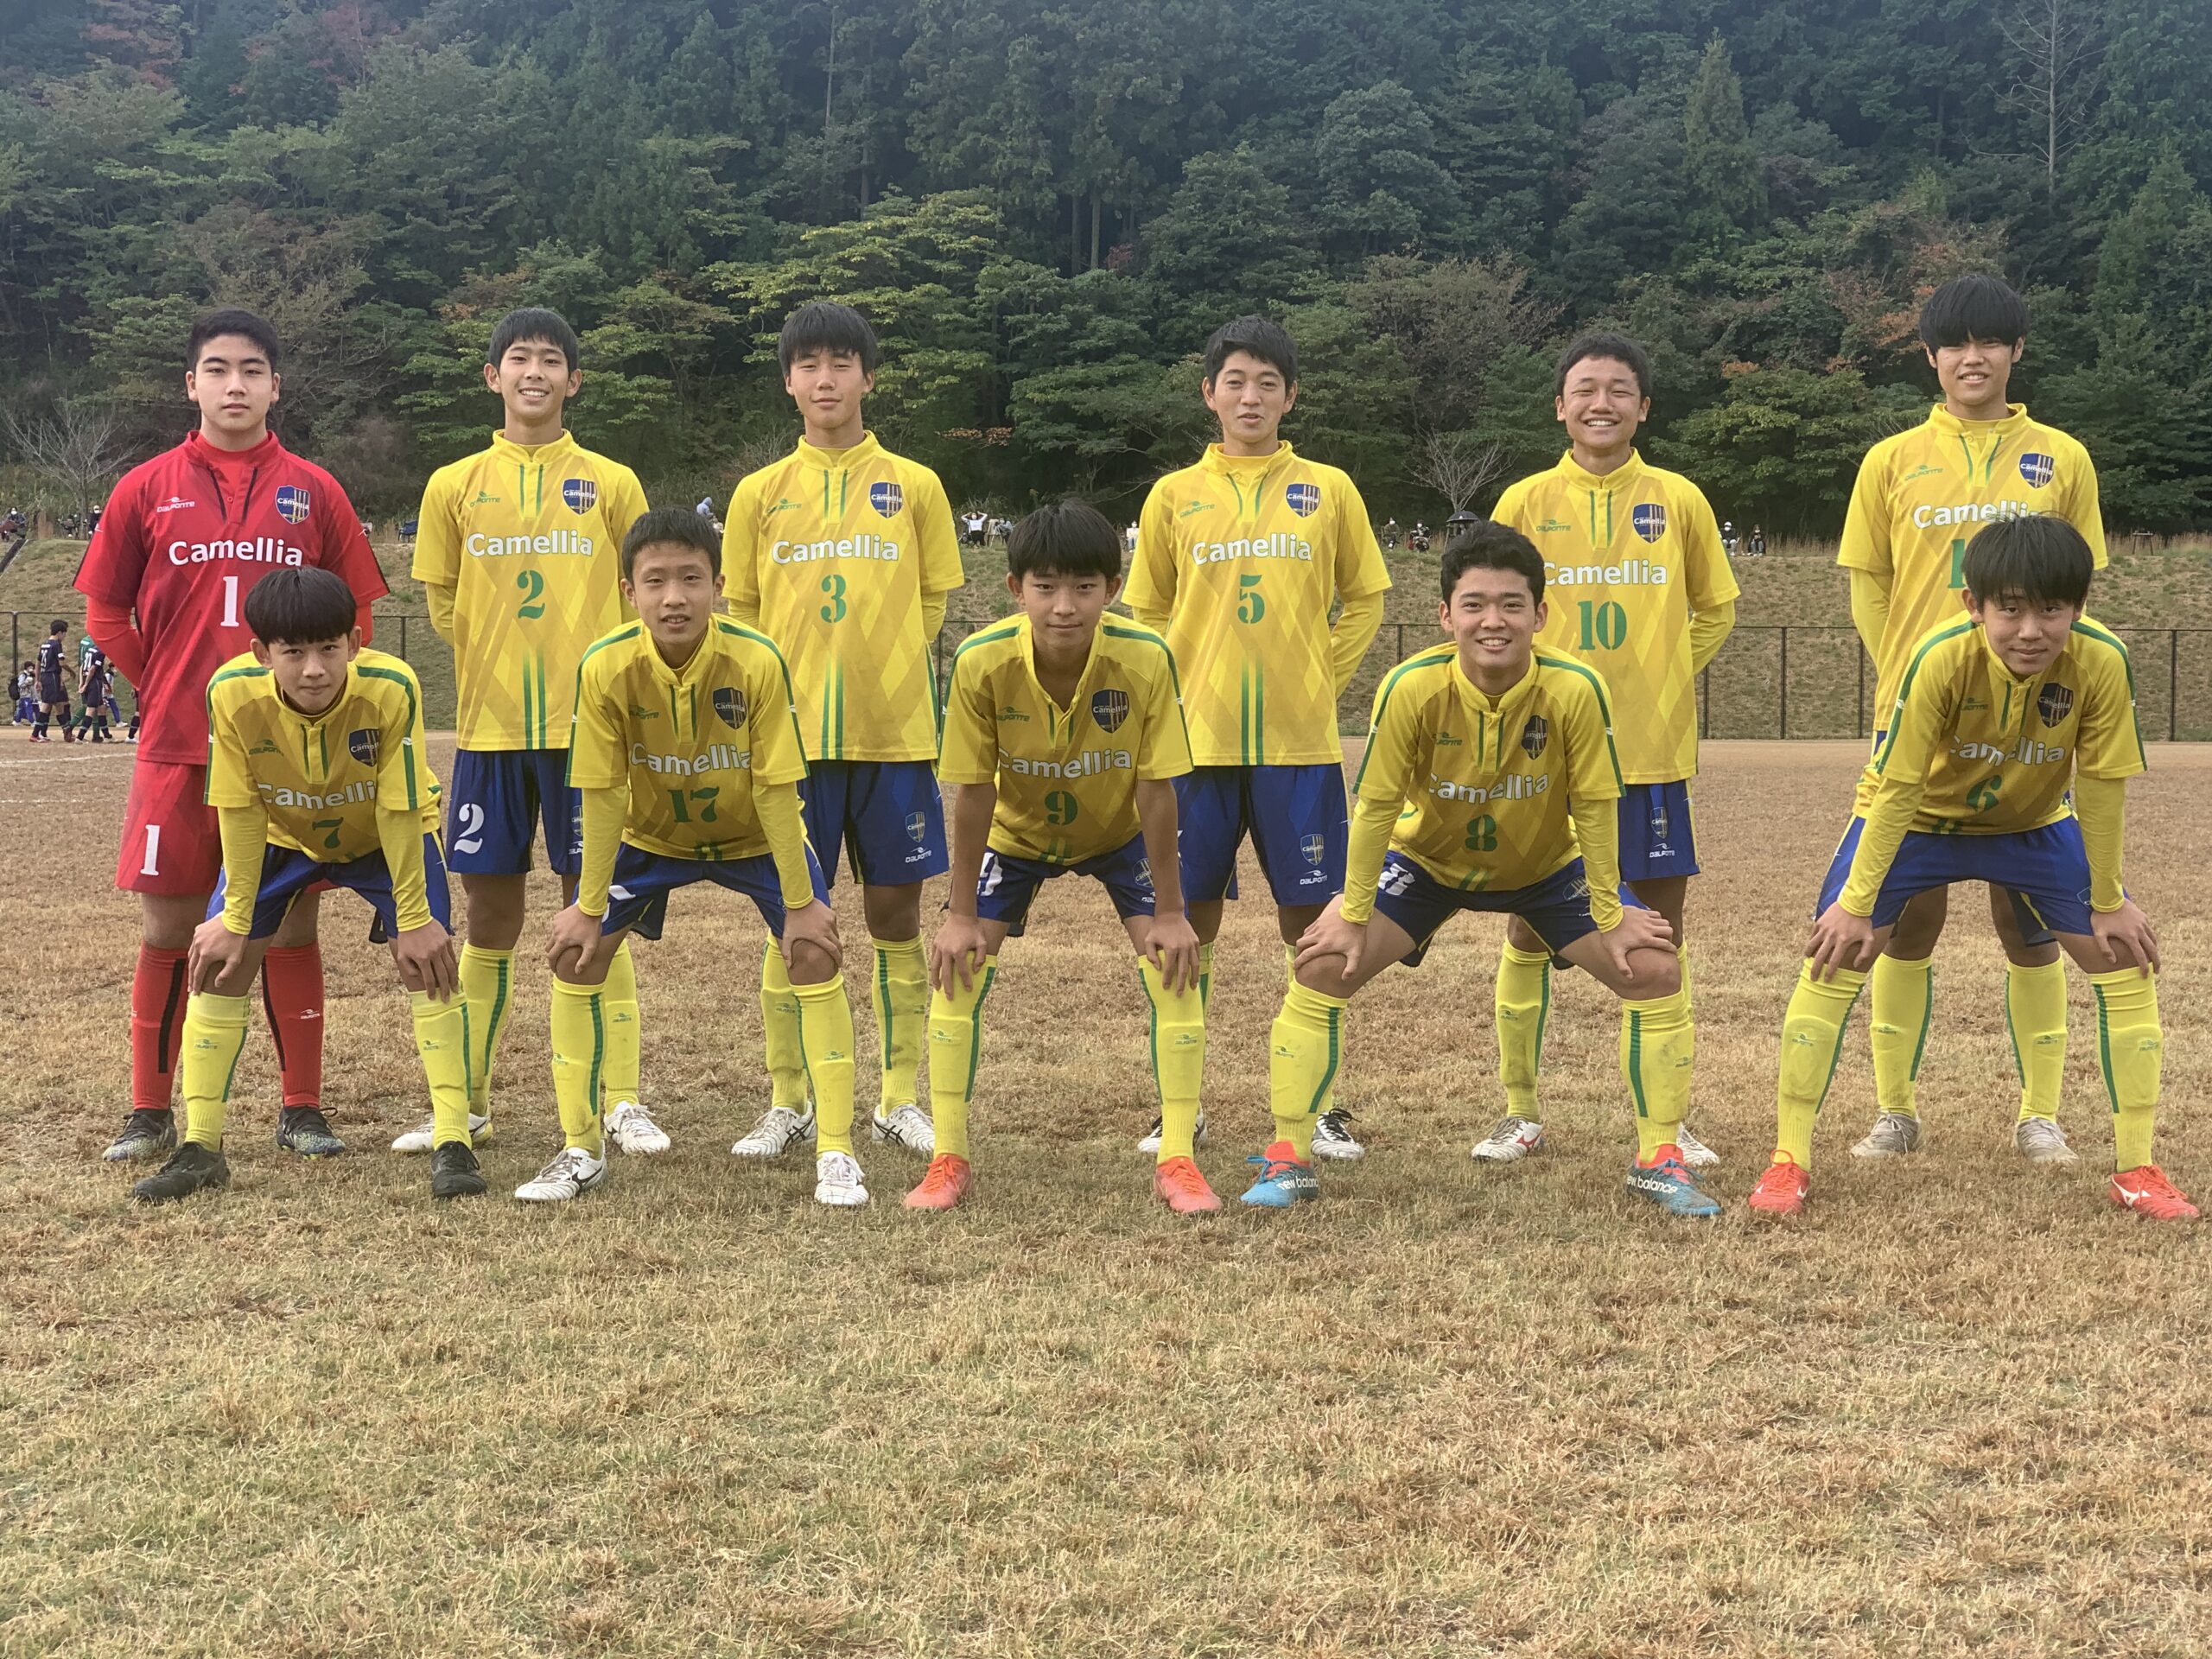 U15福岡県リーグ 昇格戦トーナメント 油山カメリアfcオフィシャルサイト